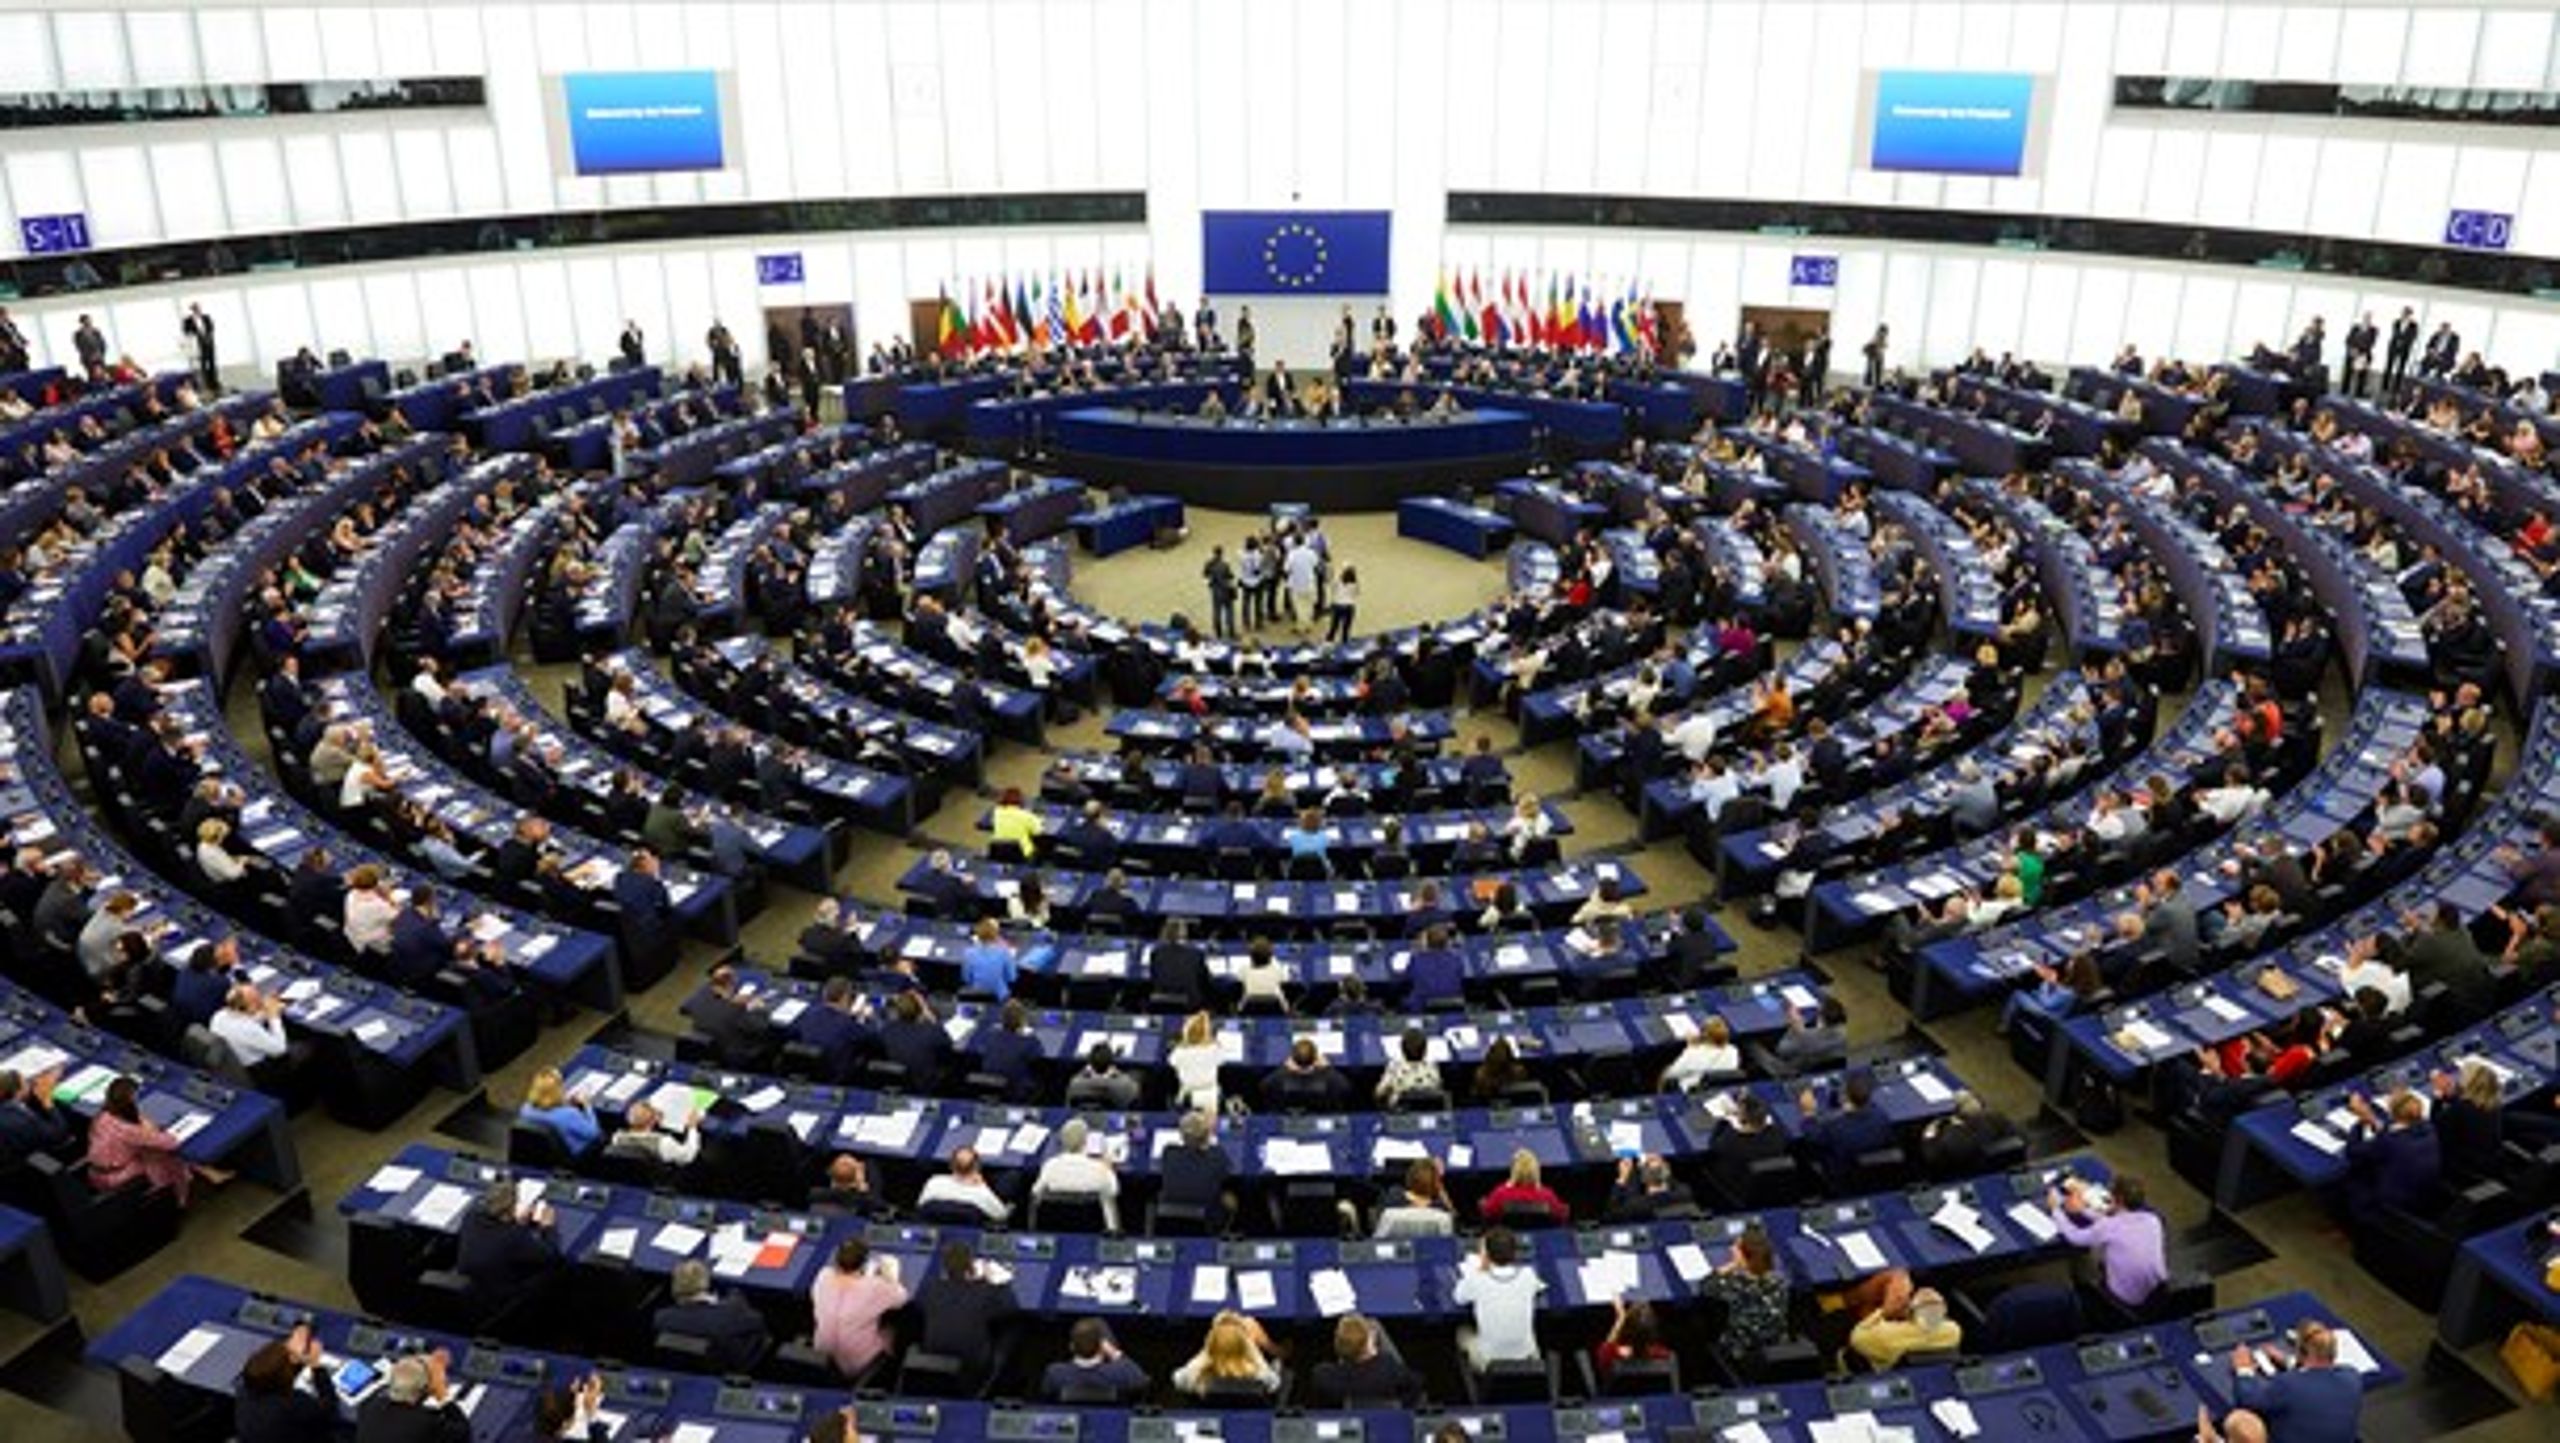 Av flera olika anledningar är det svårt att få till en lagstiftning på EU-nivå, därför uppmanar Europaparlamentet till nationella lösningar, skriver debattörerna.